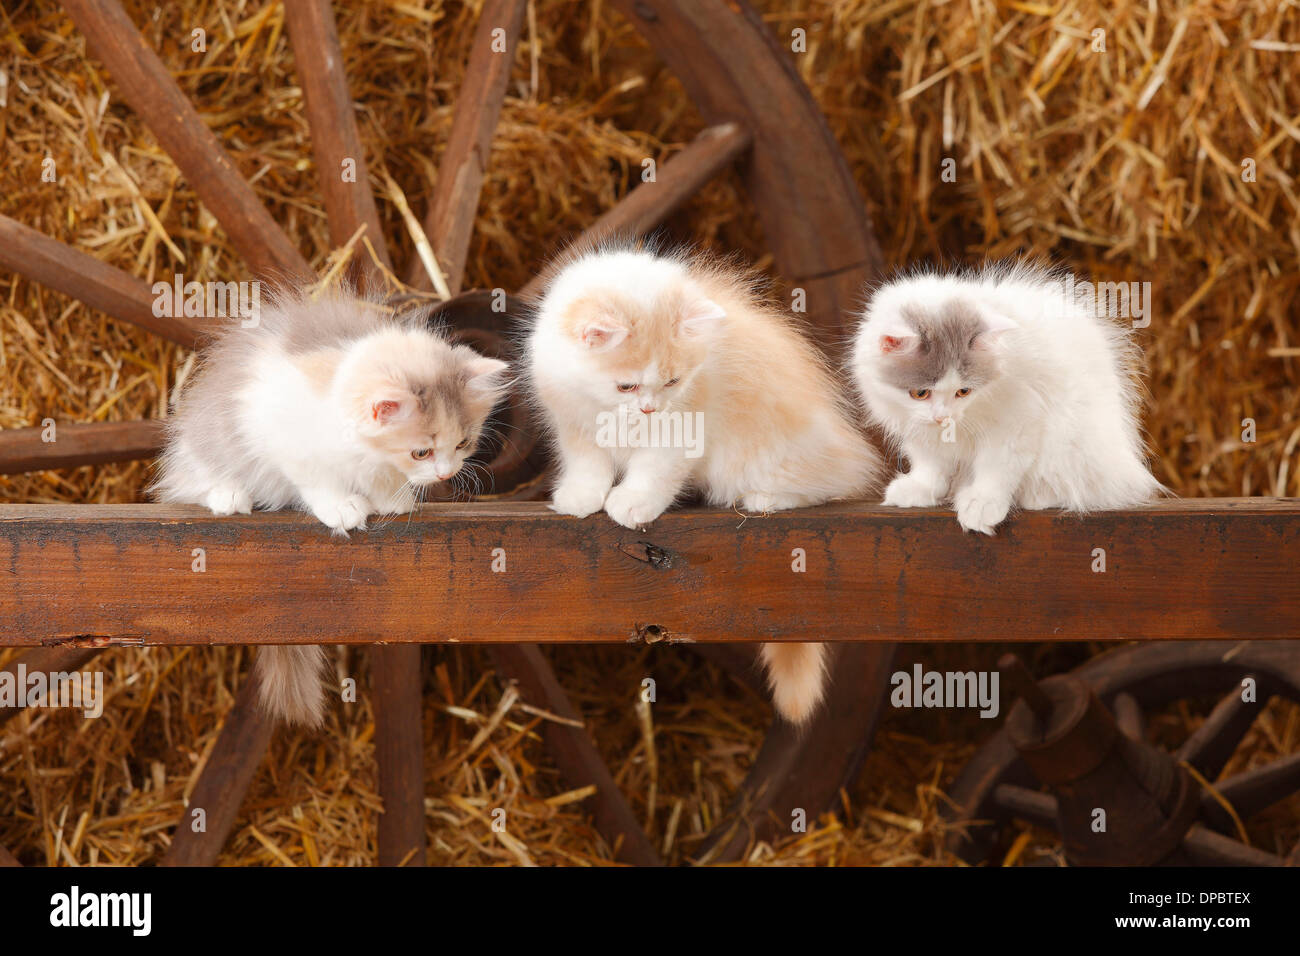 La trois hommes aux cheveux longs, chatons, assis sur une latte de bois dans une grange Banque D'Images